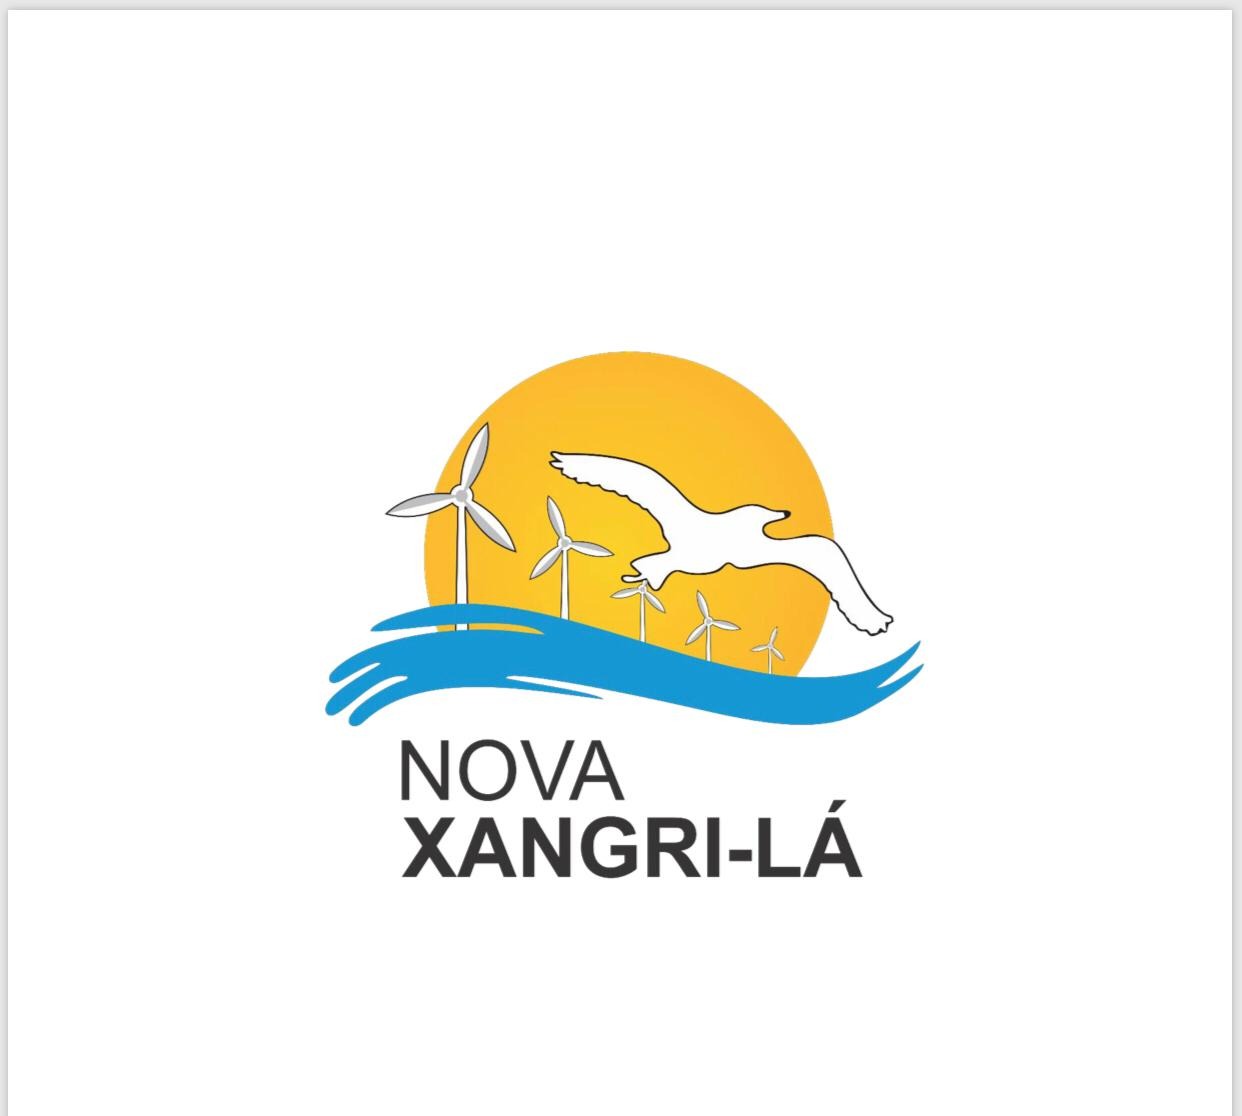 Nova Xangri-lá